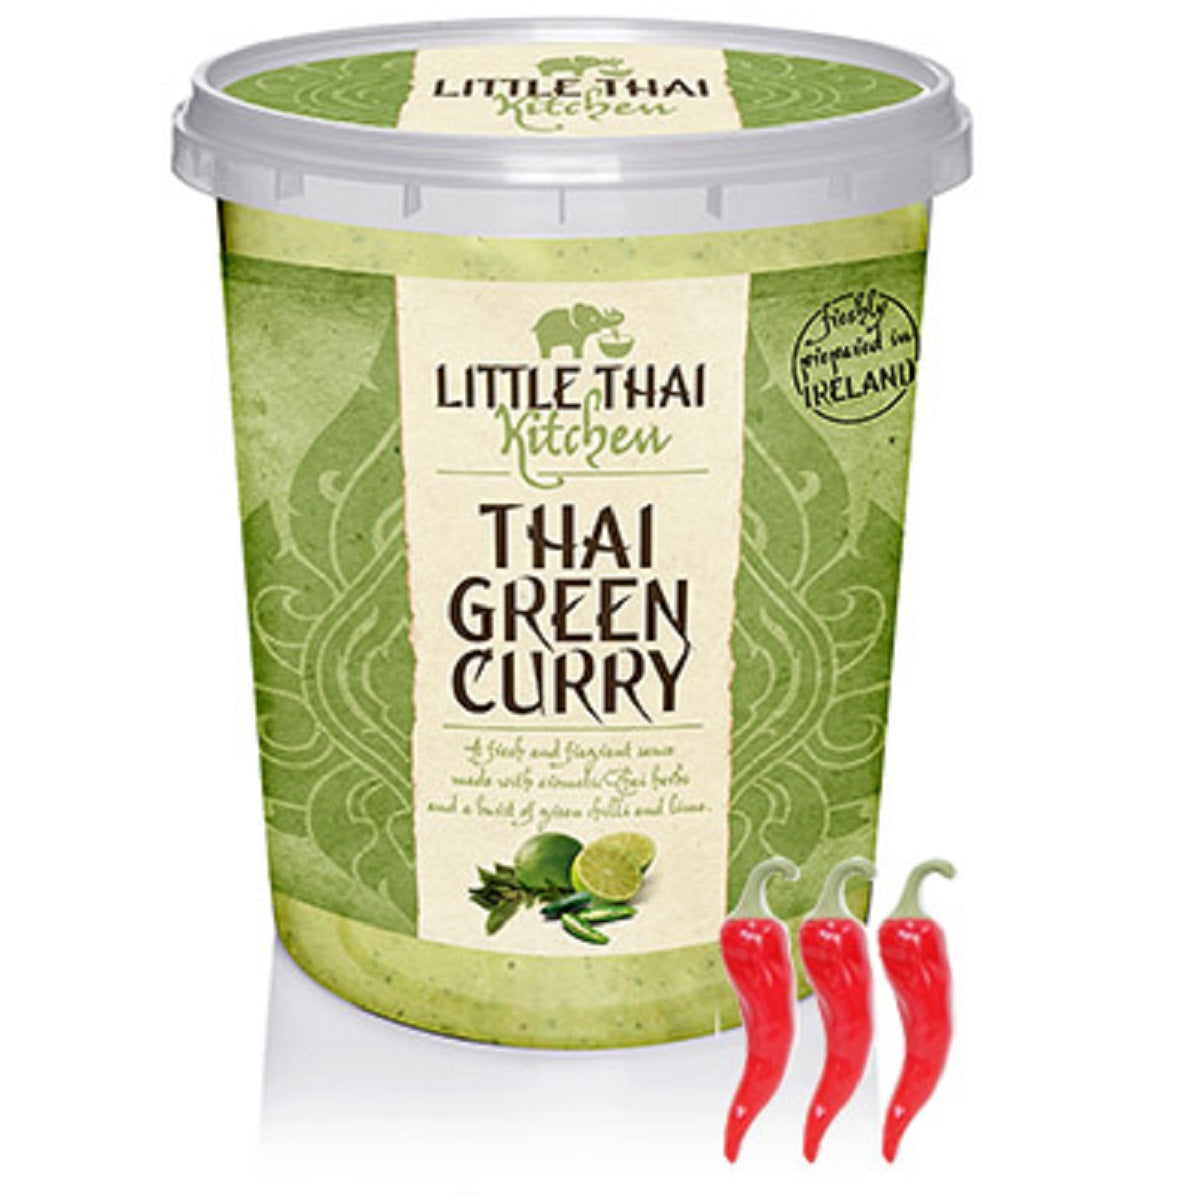 Little Thai Kitchen Thai Green Curry 400g